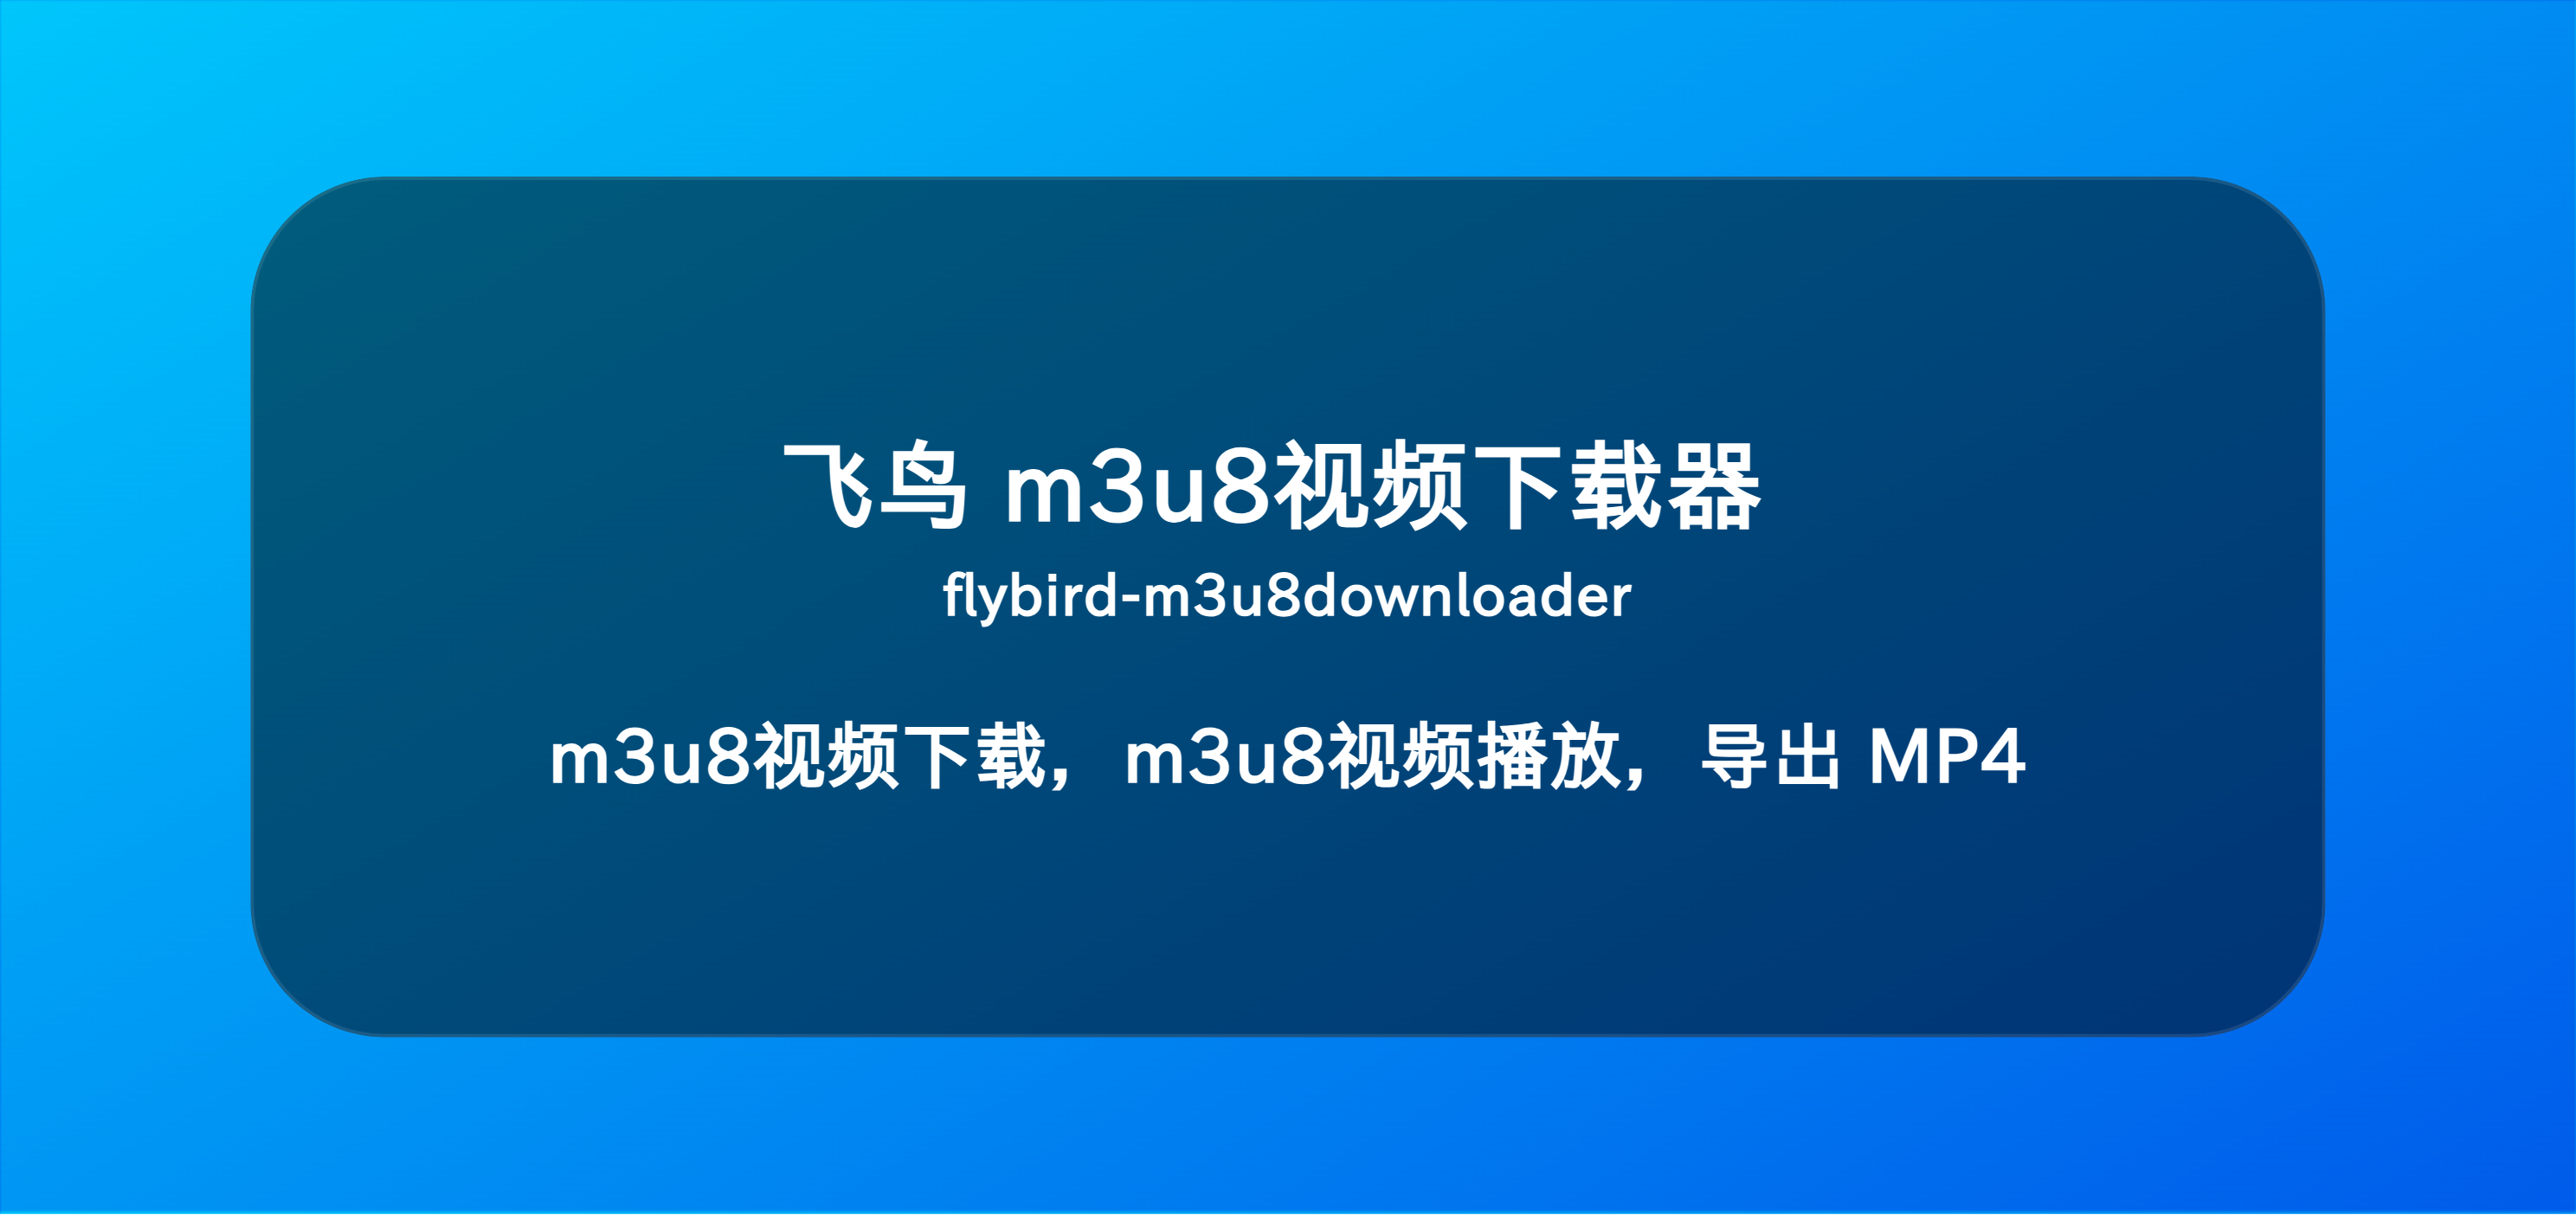 FlyBird M3u8 download